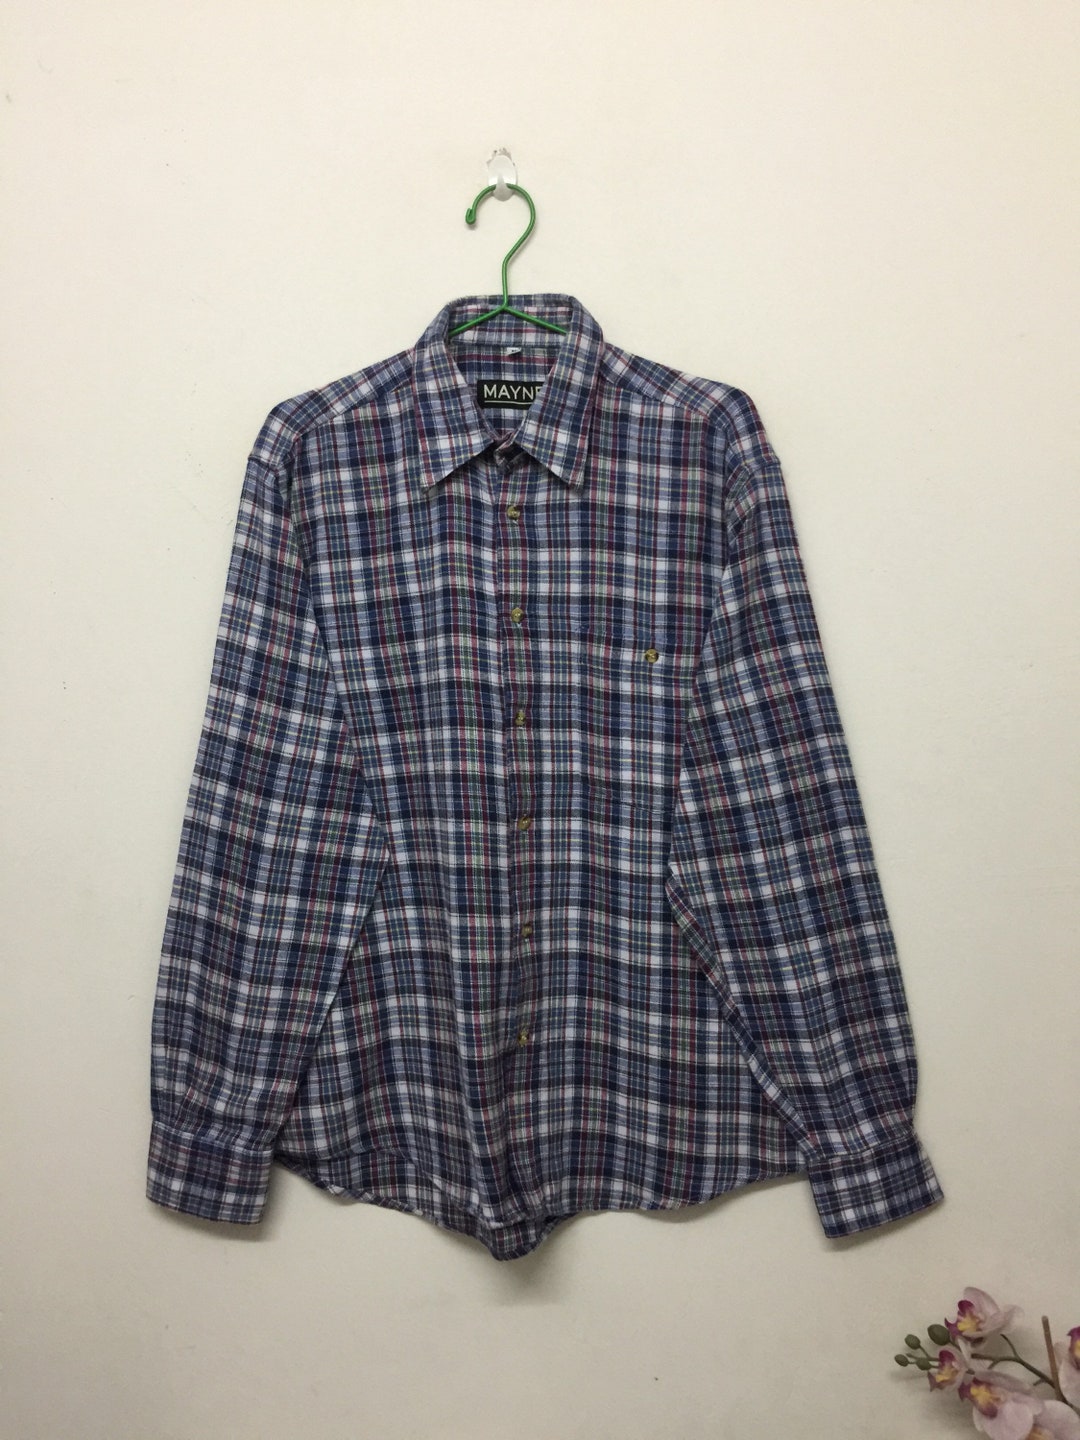 Vintage Mayne Shirts Mayne Checkered Grunge Style Shirt Size - Etsy